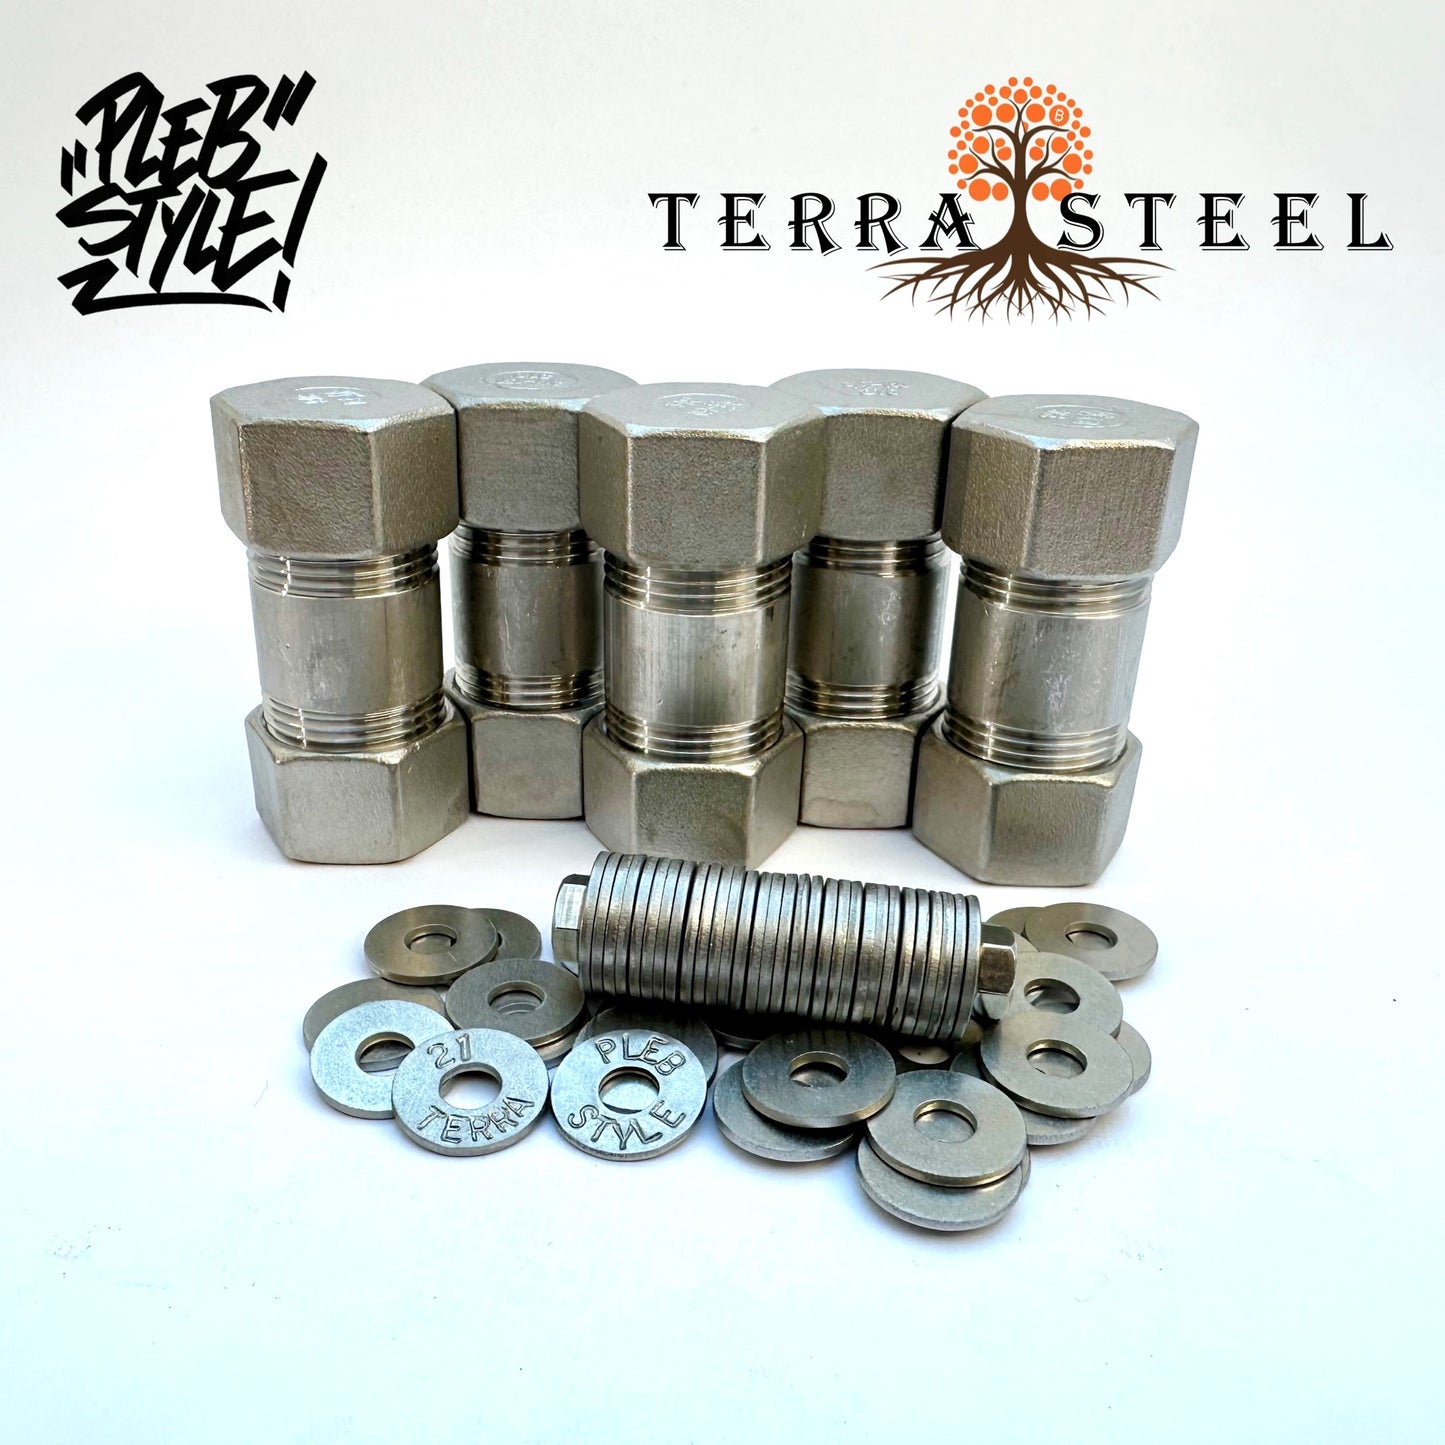 5x Terra Steel Wallet by Plebstyle